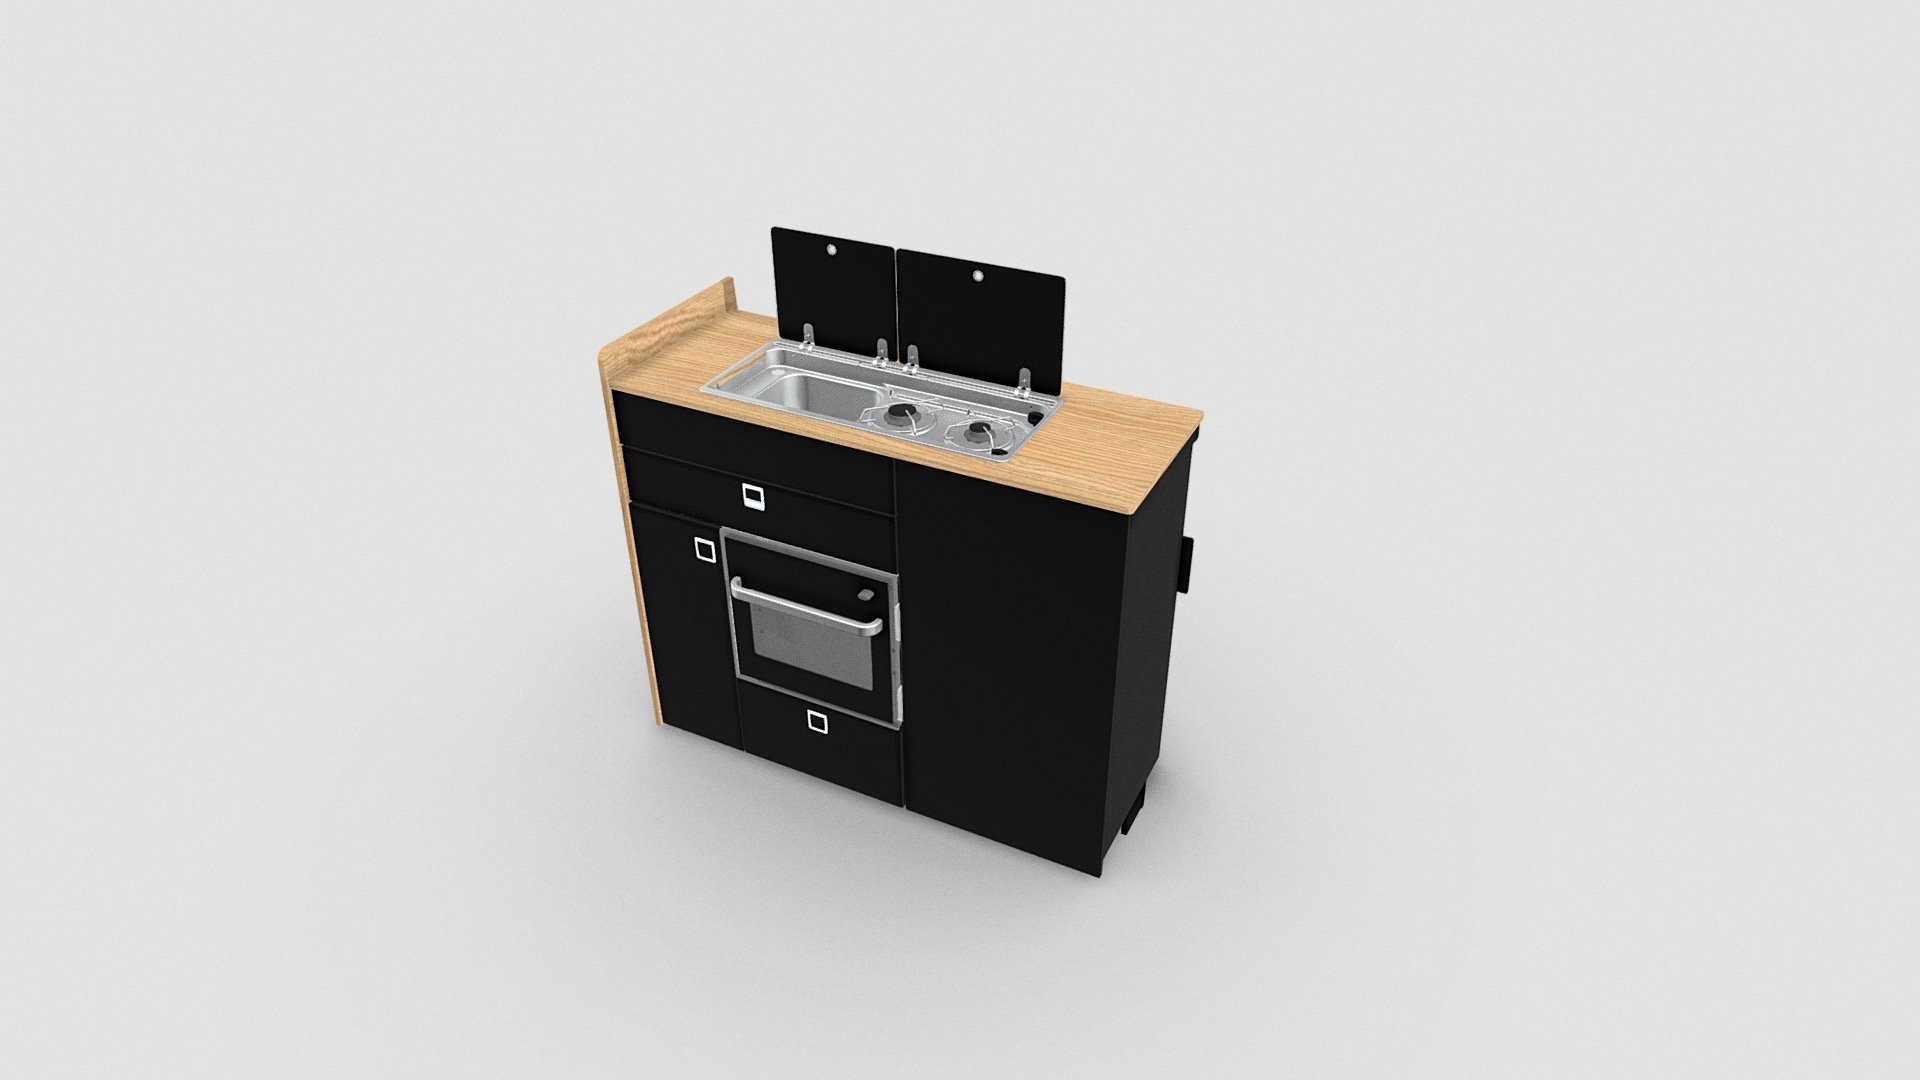 3D model of a kitchen pod designed by EVO Design to fit your campervan - EVO V8 + Oven- Campervan kitchen pod - 3D model by evomotiondesign 3d model